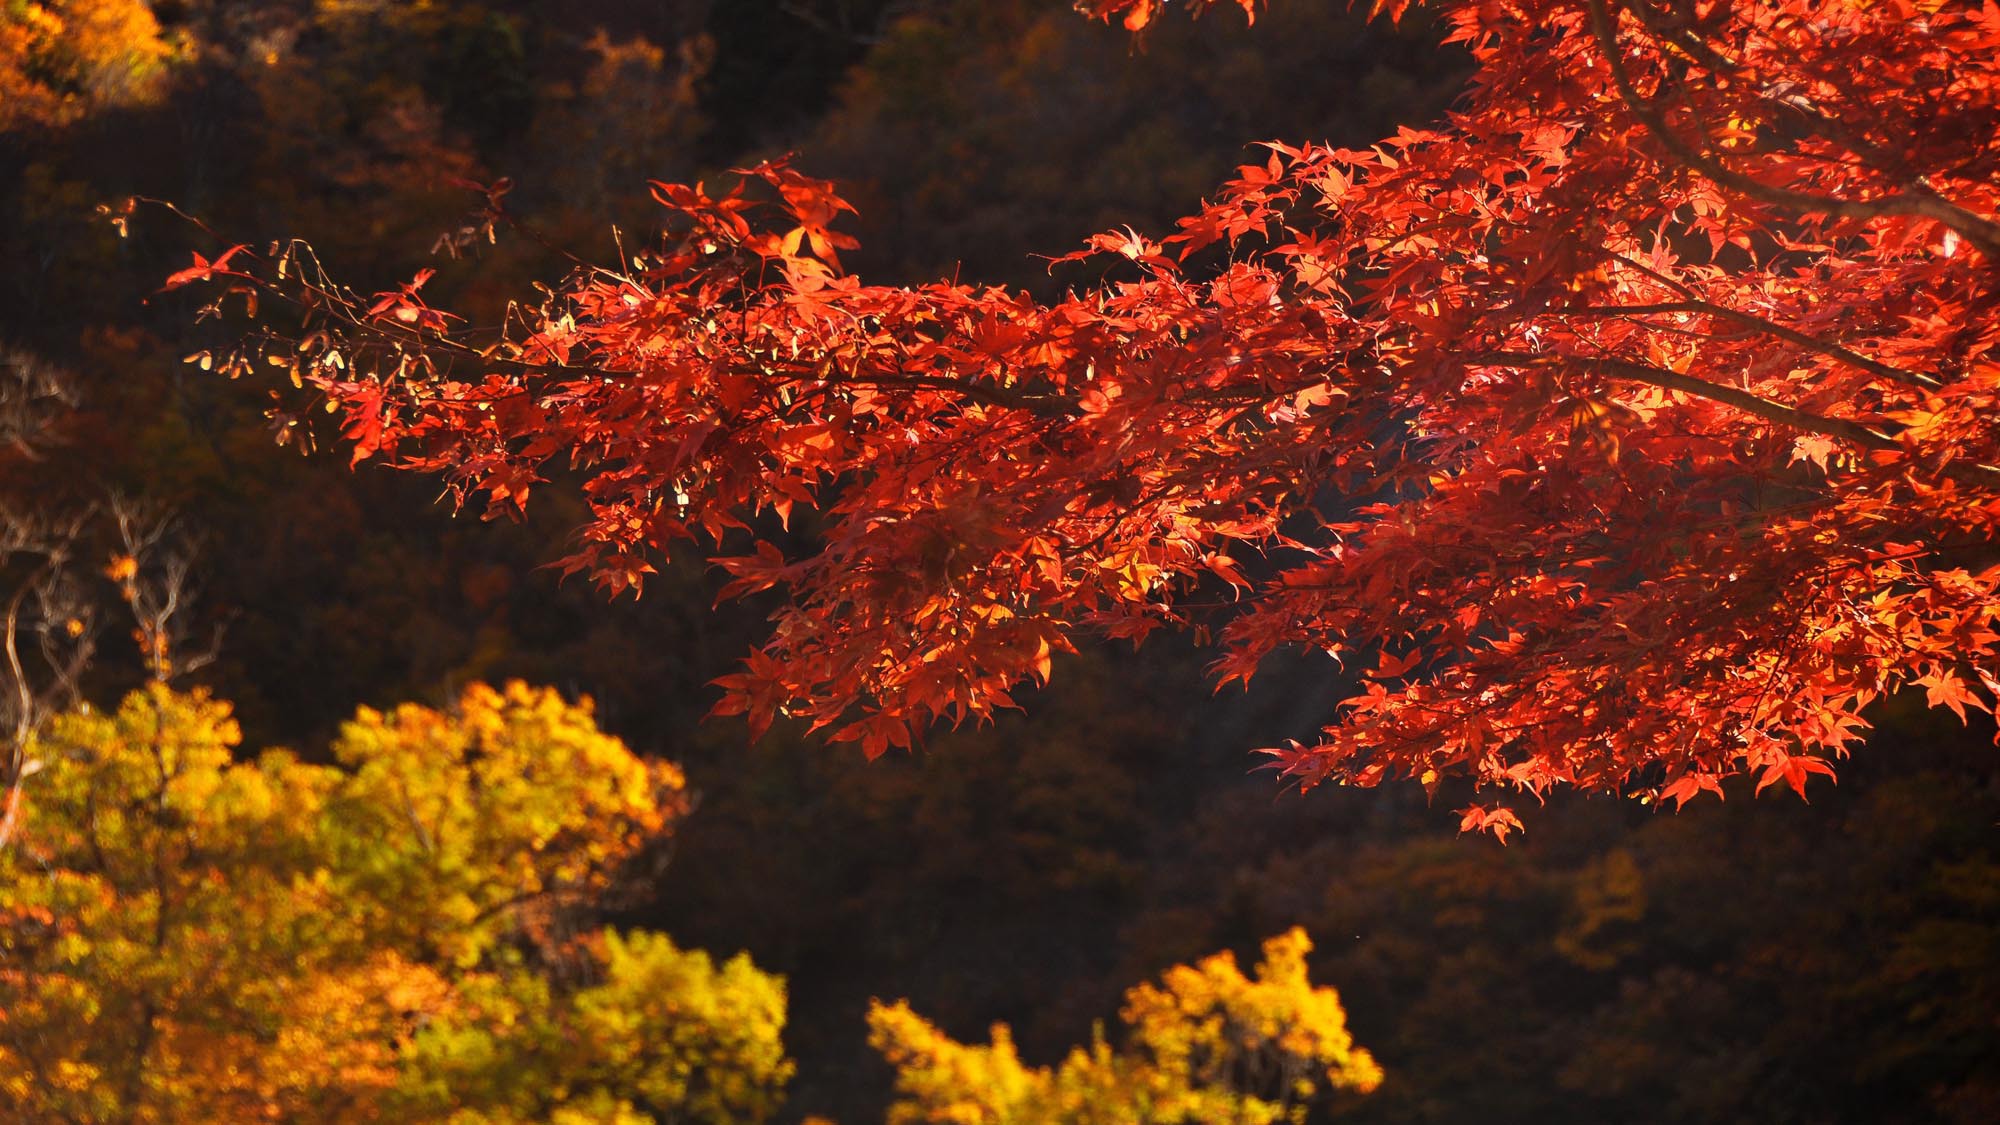 【清津峡・秋】時期により色鮮やかな紅葉が見られます